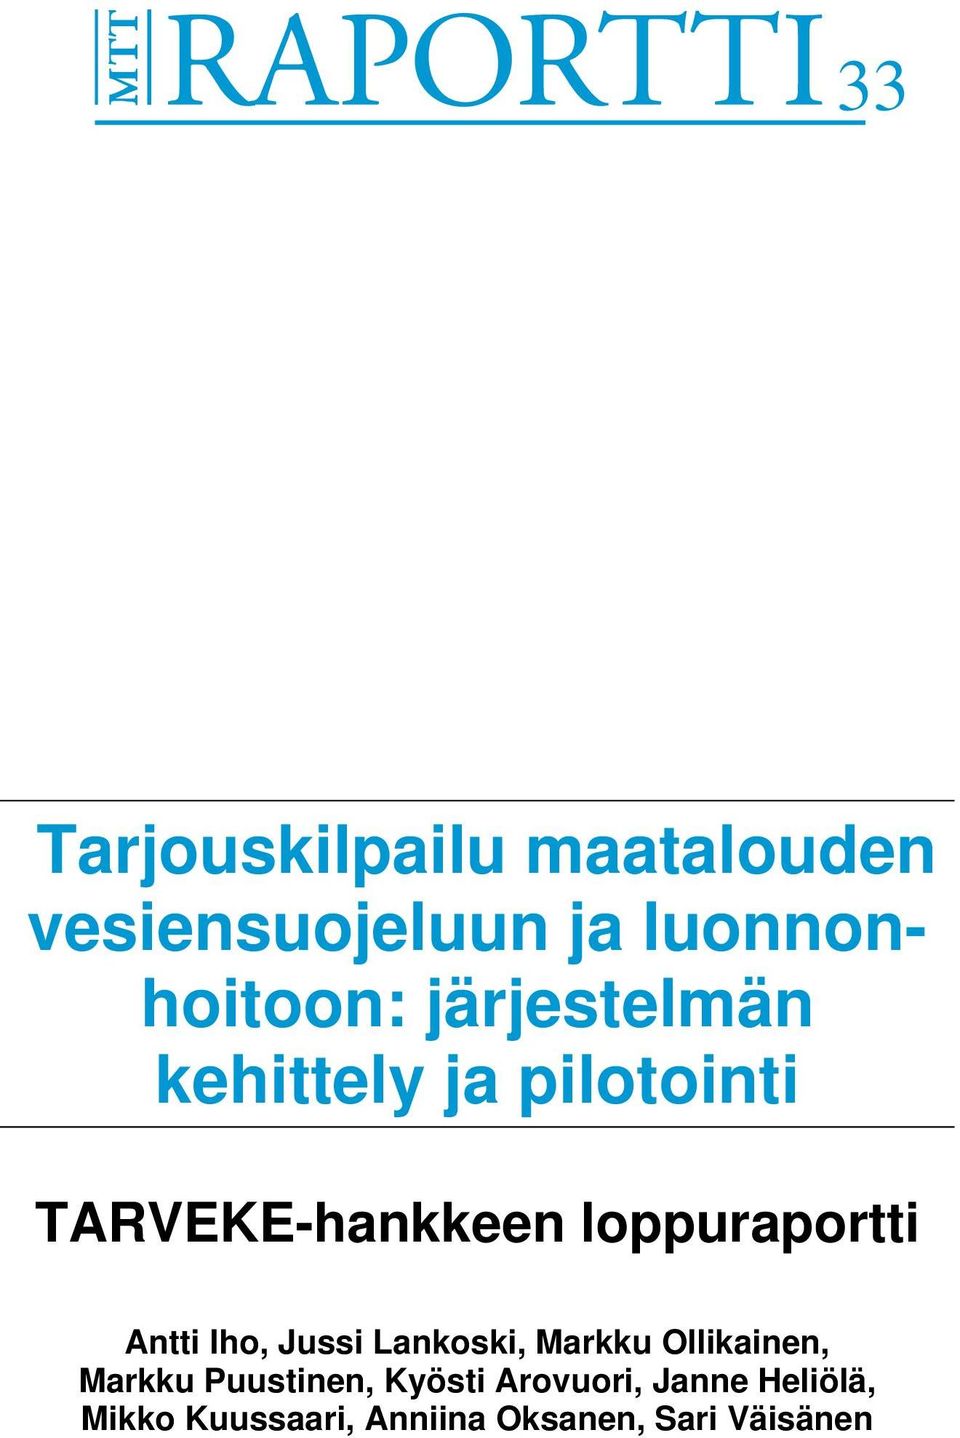 Antti Iho, Jussi Lankoski, Markku Ollikainen, Markku Puustinen,